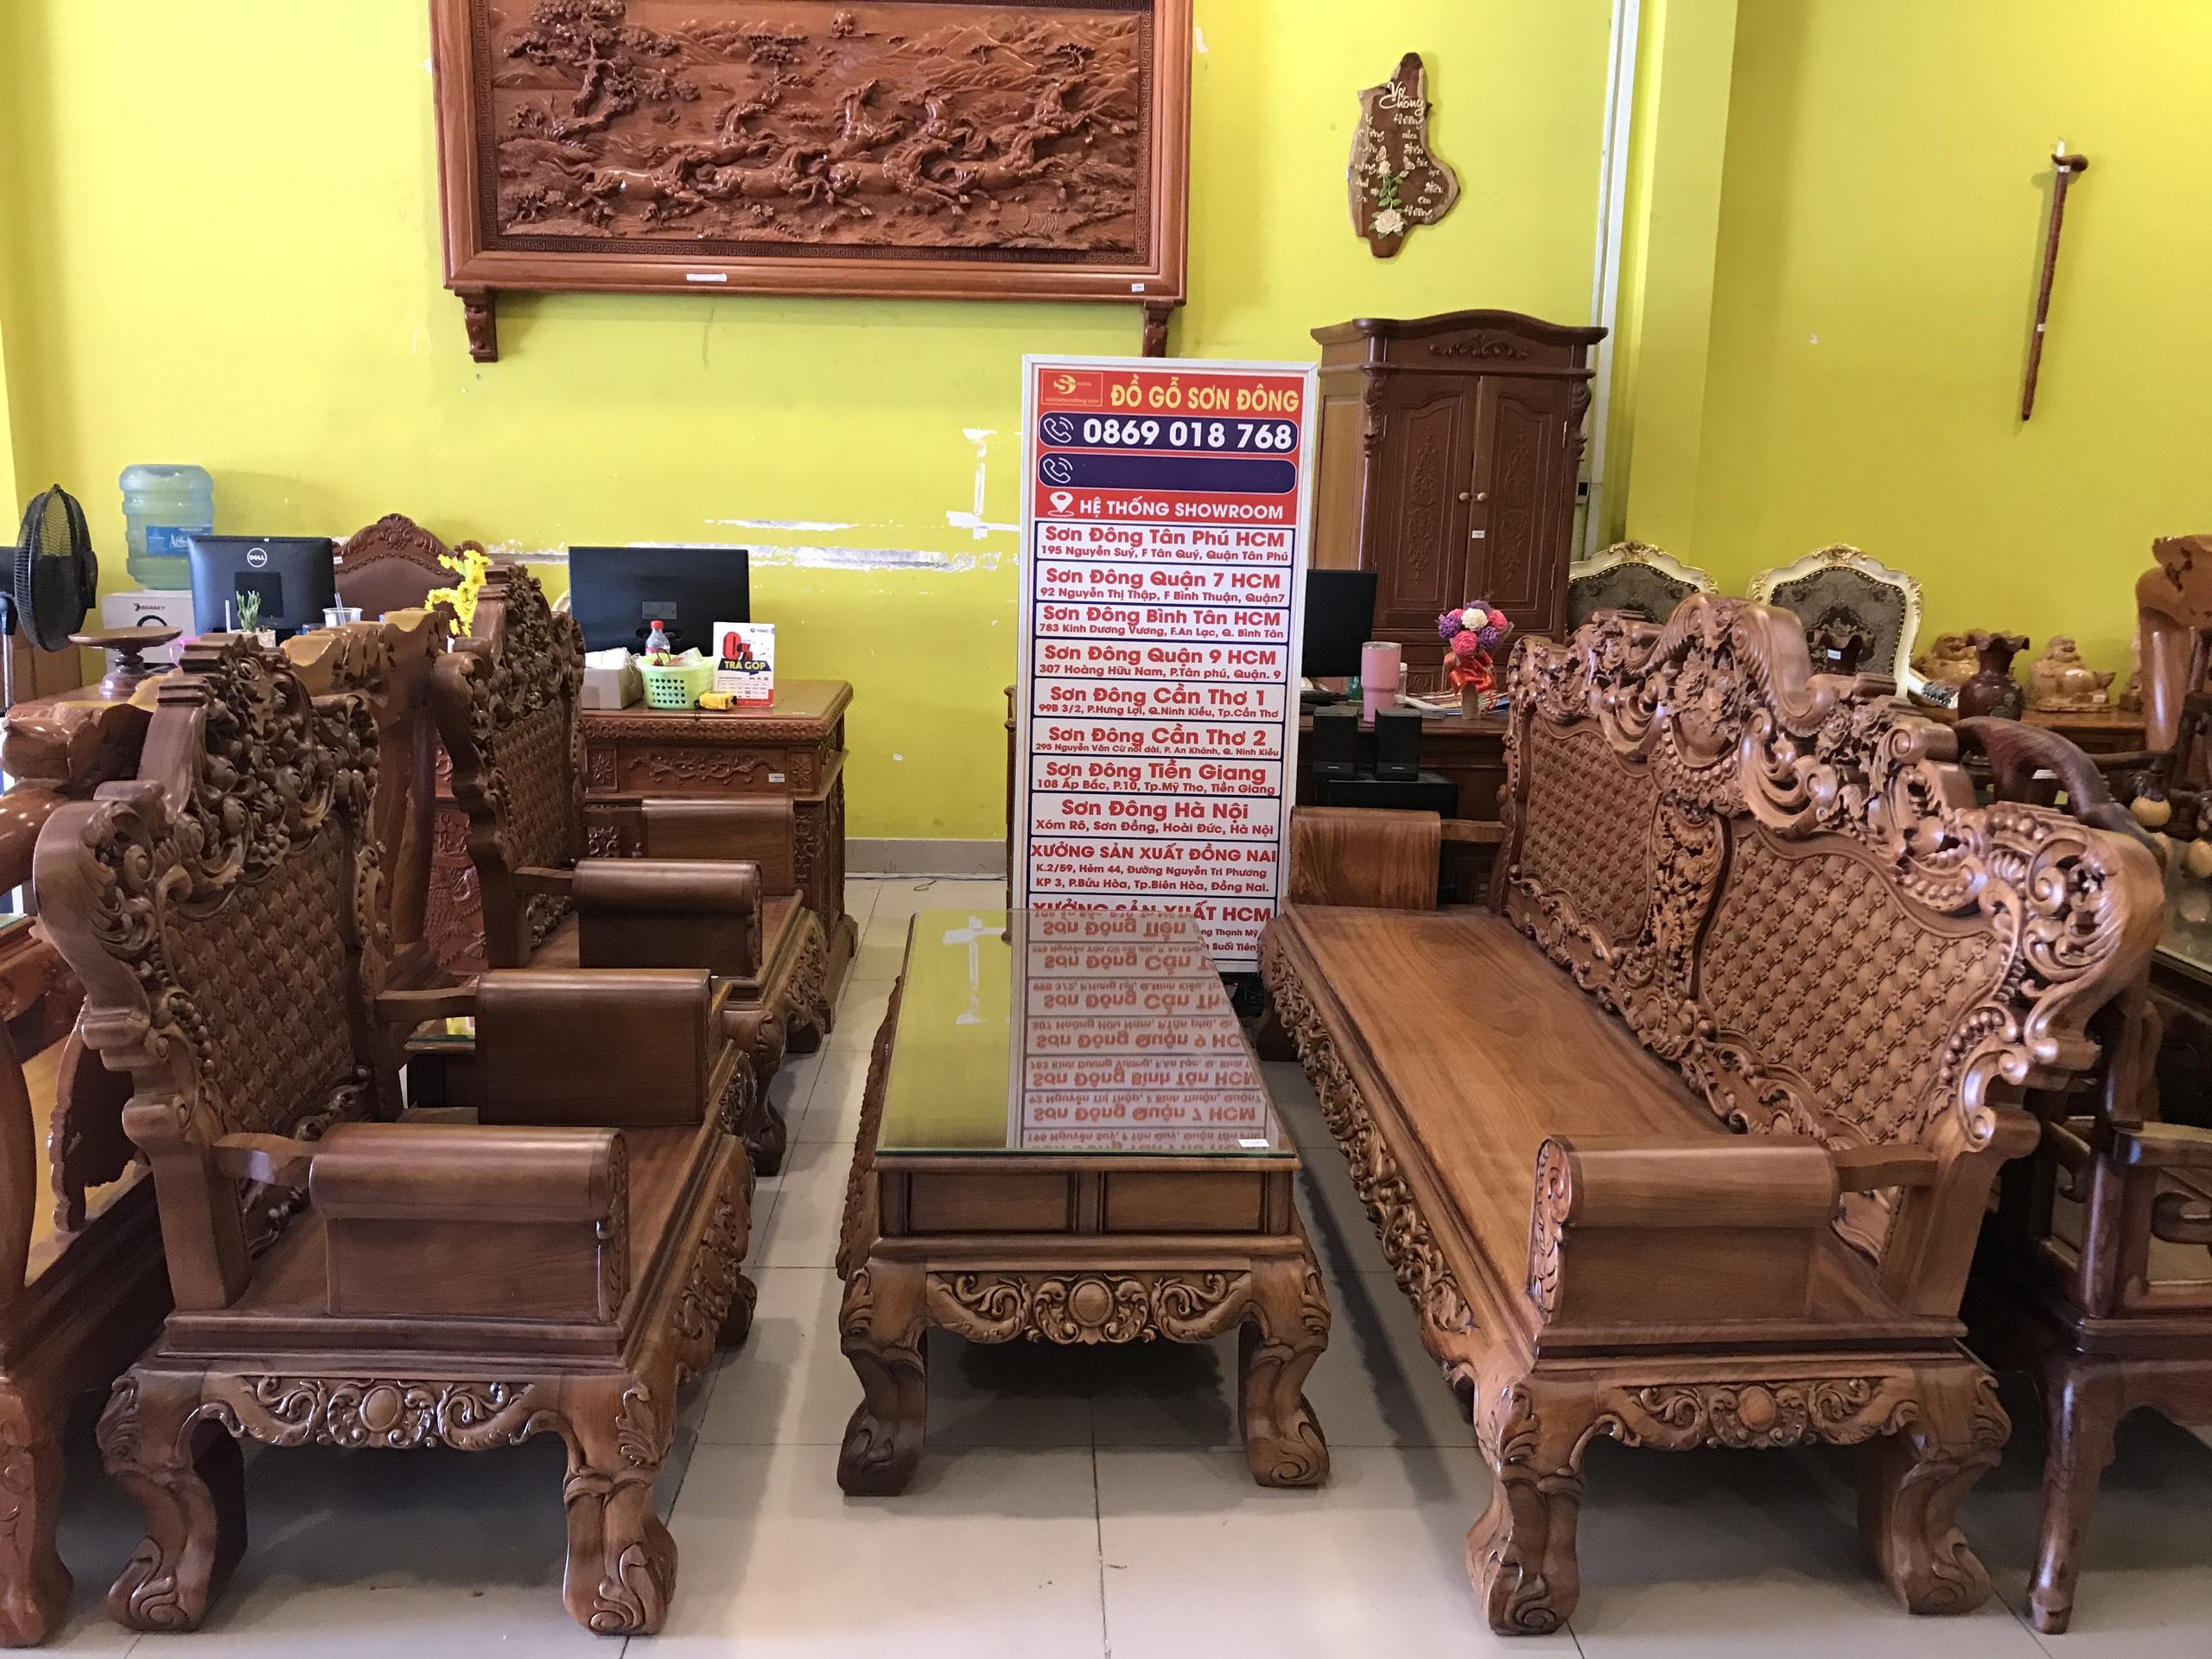 Sản phẩm bộ bàn ghế hoàng gia gỗ đỏ màu cổ điển đang trở thành lựa chọn hàng đầu của các gia đình muốn tạo nên một không gian sang trọng, cổ điển cho phòng khách của mình. Với chất liệu gỗ đỏ cao cấp, sản phẩm mang lại sự cứng cáp, bền vững và đẳng cấp cho không gian nội thất của bạn.